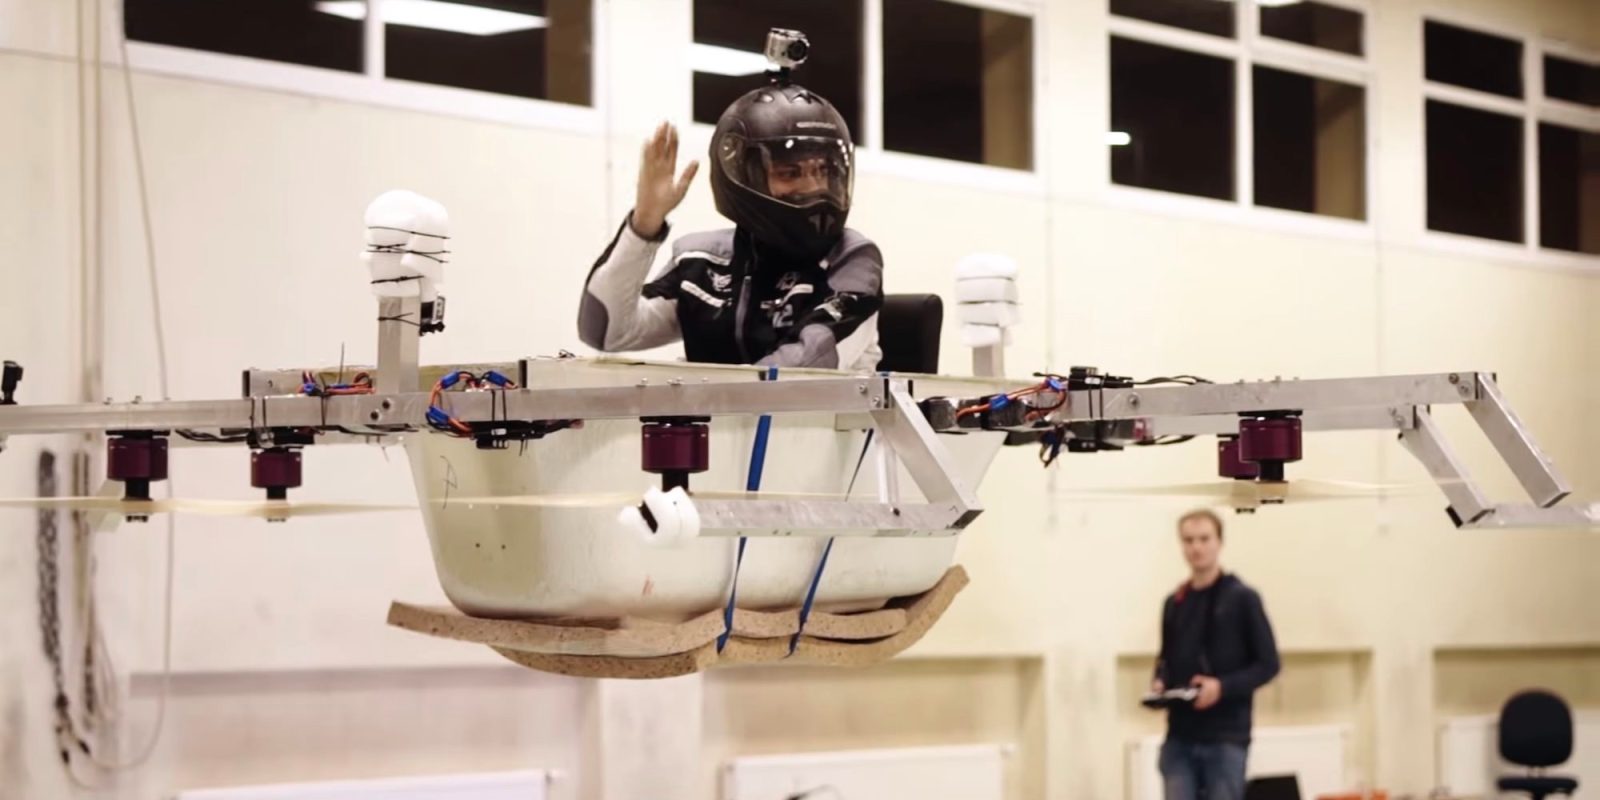 German engineering brings us the flying bathtub drone